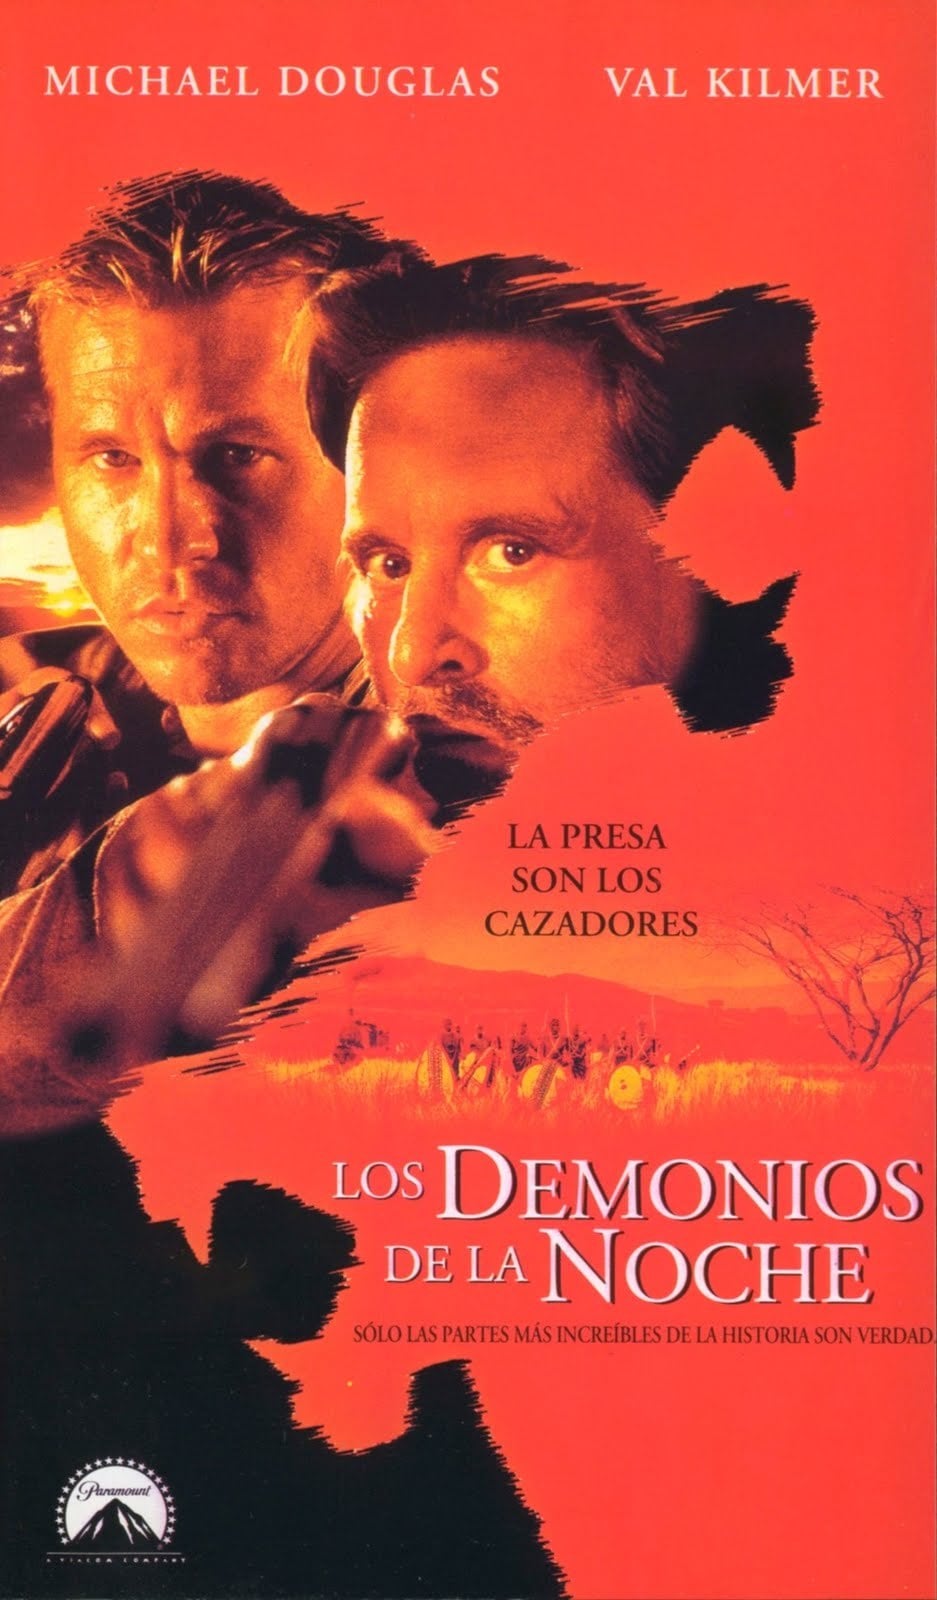 Poster de la película "Los demonios de la noche"